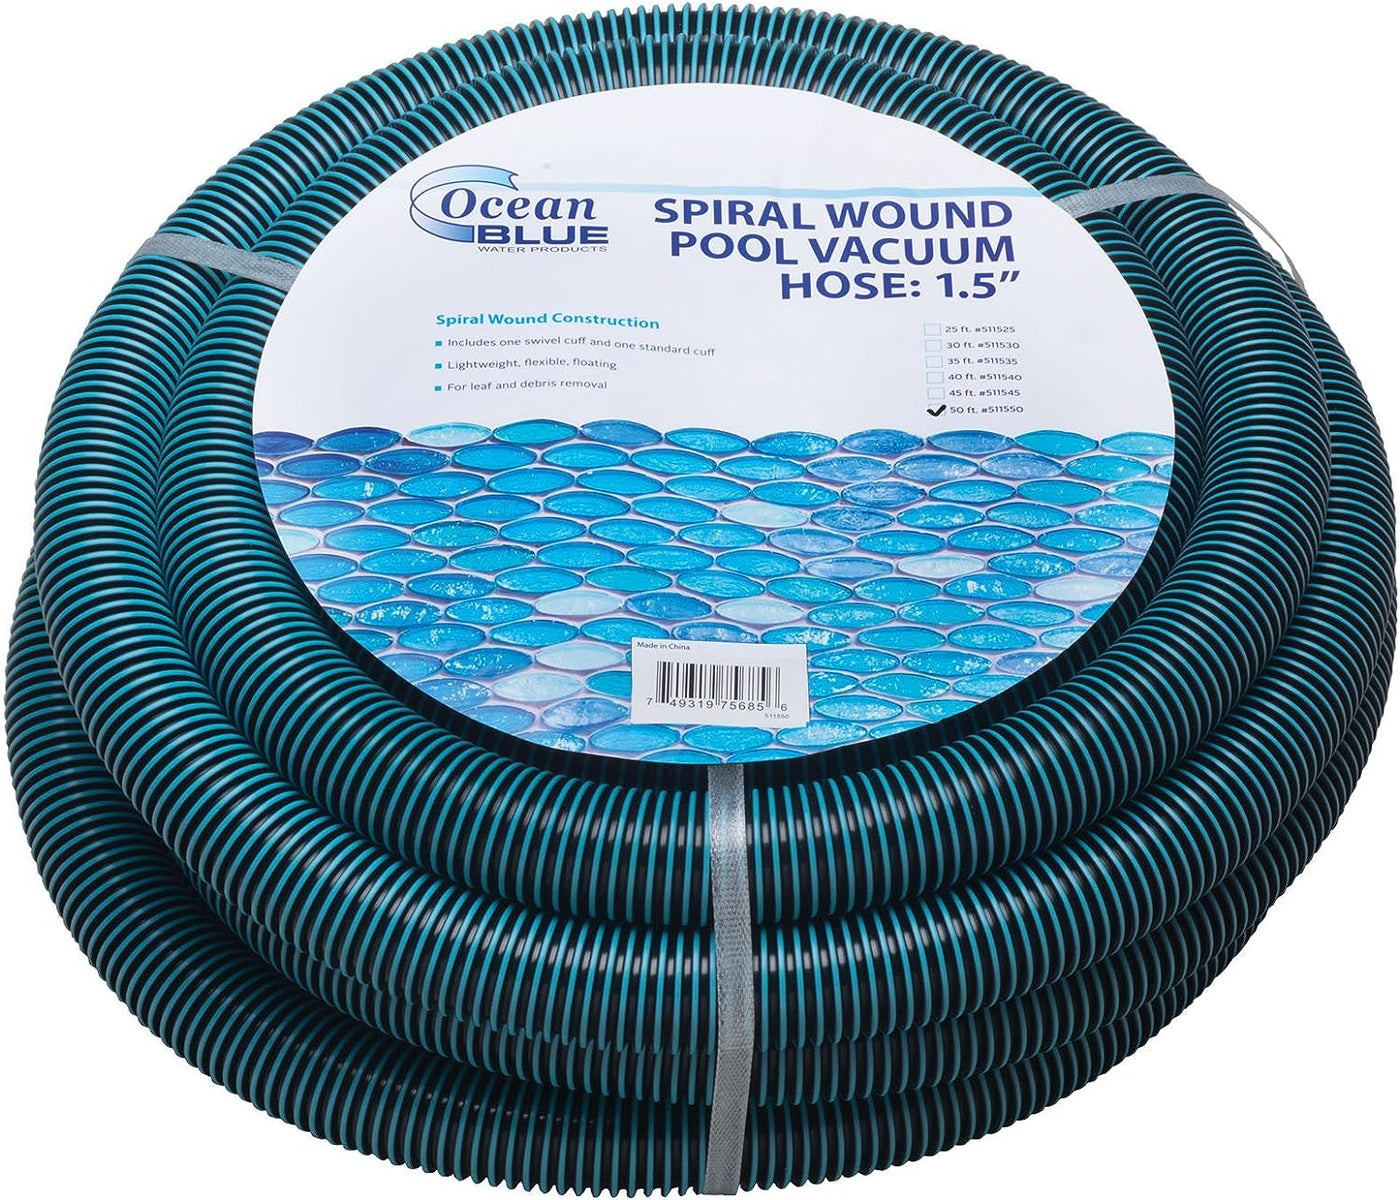 Ocean Blue 1.5" x 40' Spiral Wound Vacuum Hose w/ Swivel & Standard Cuff